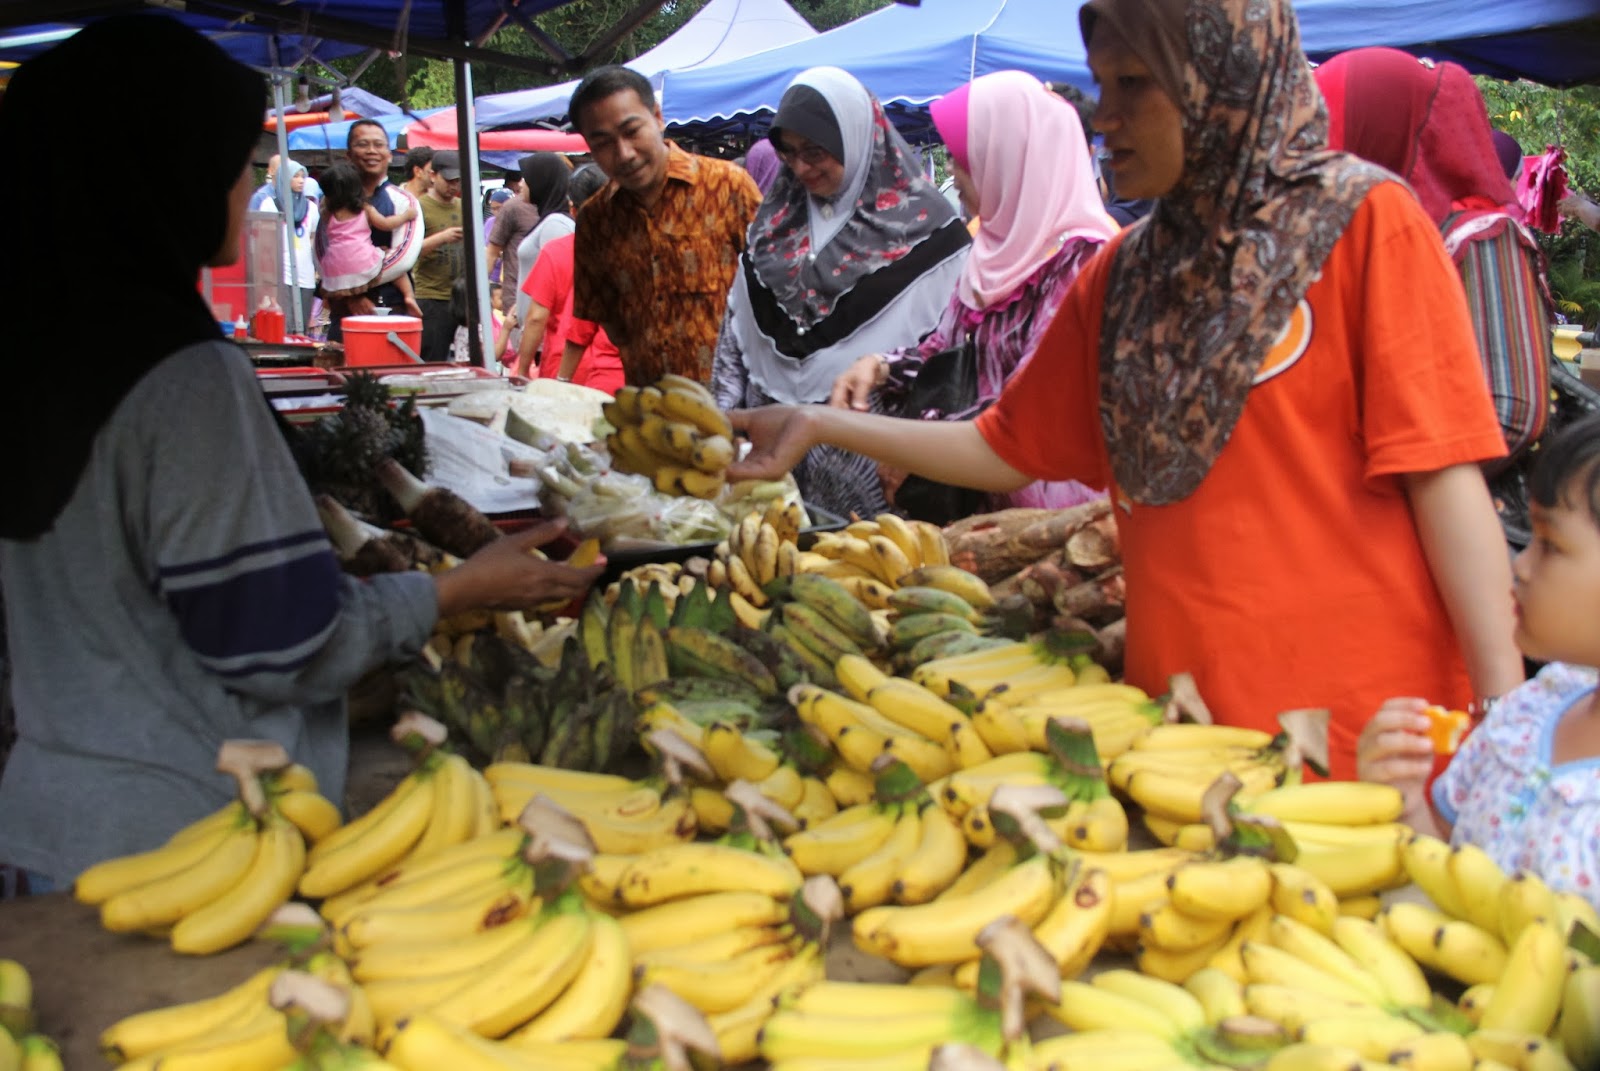 PARLIMEN PASIR GUDANG: Hari Pertama Buka Kiosk Aduan Rakyat di Pasar